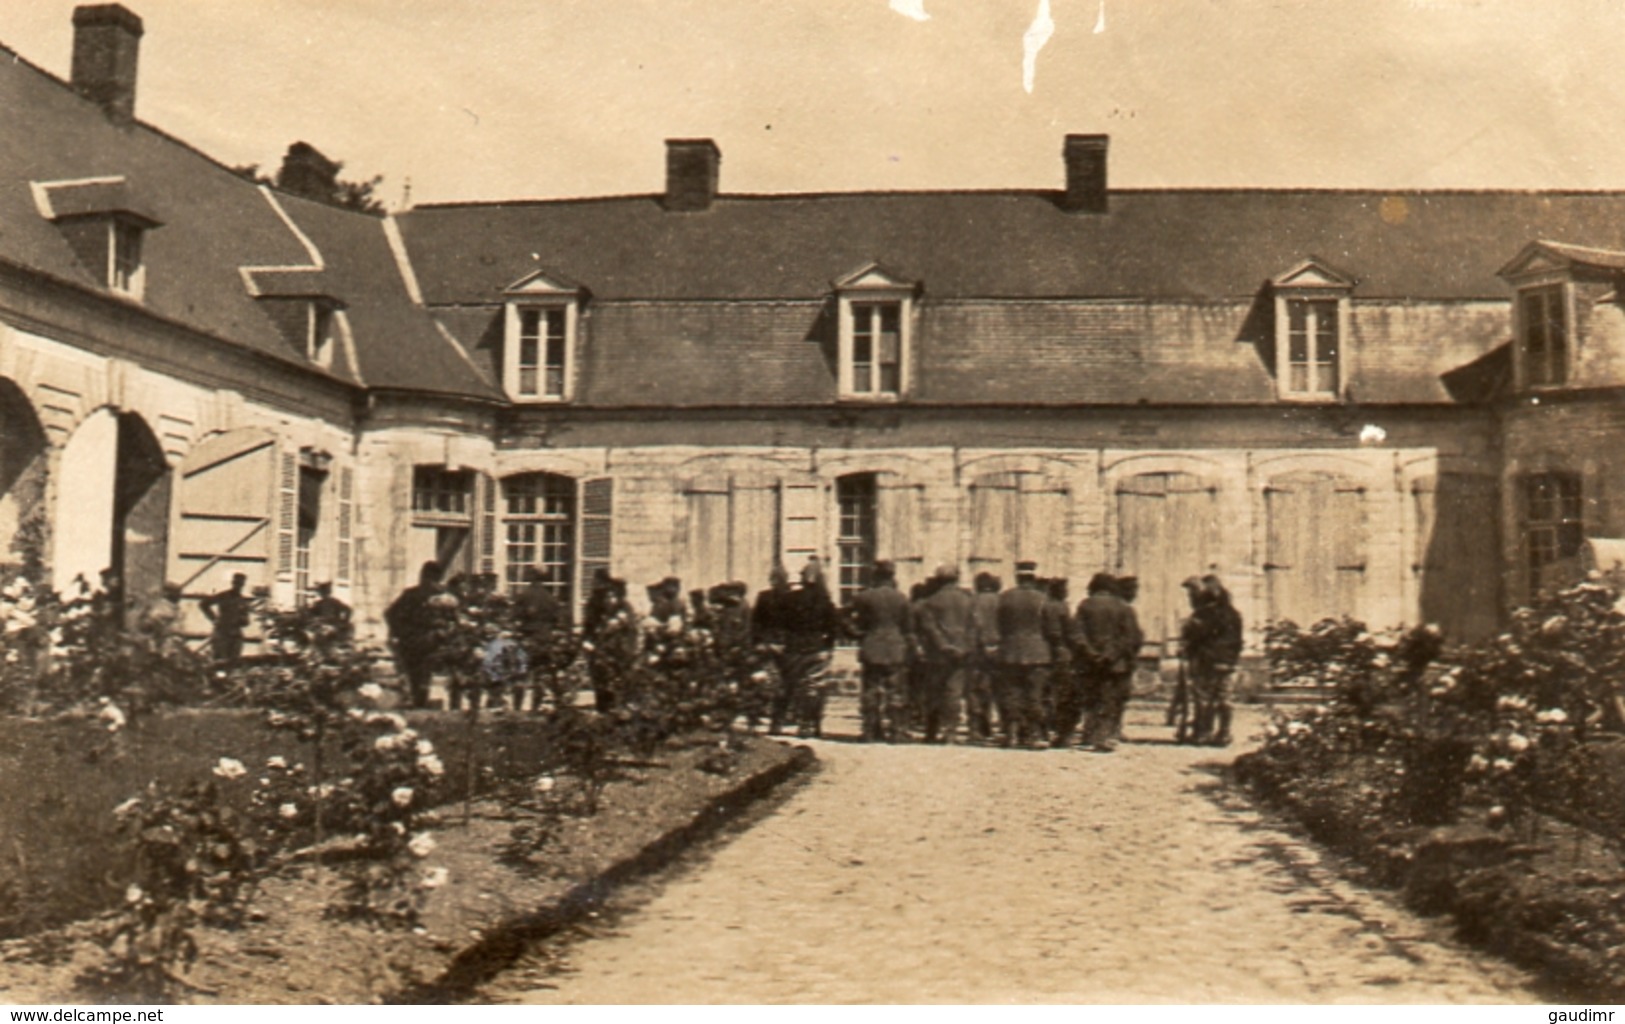 PHOTO FRANÇAISE - PRISONNIERS ALLEMANDS AU CHATEAU DE VADENCOURT PRES DE CONTAY - ALBERT SOMME GUERRE 1914 1918 - 1914-18